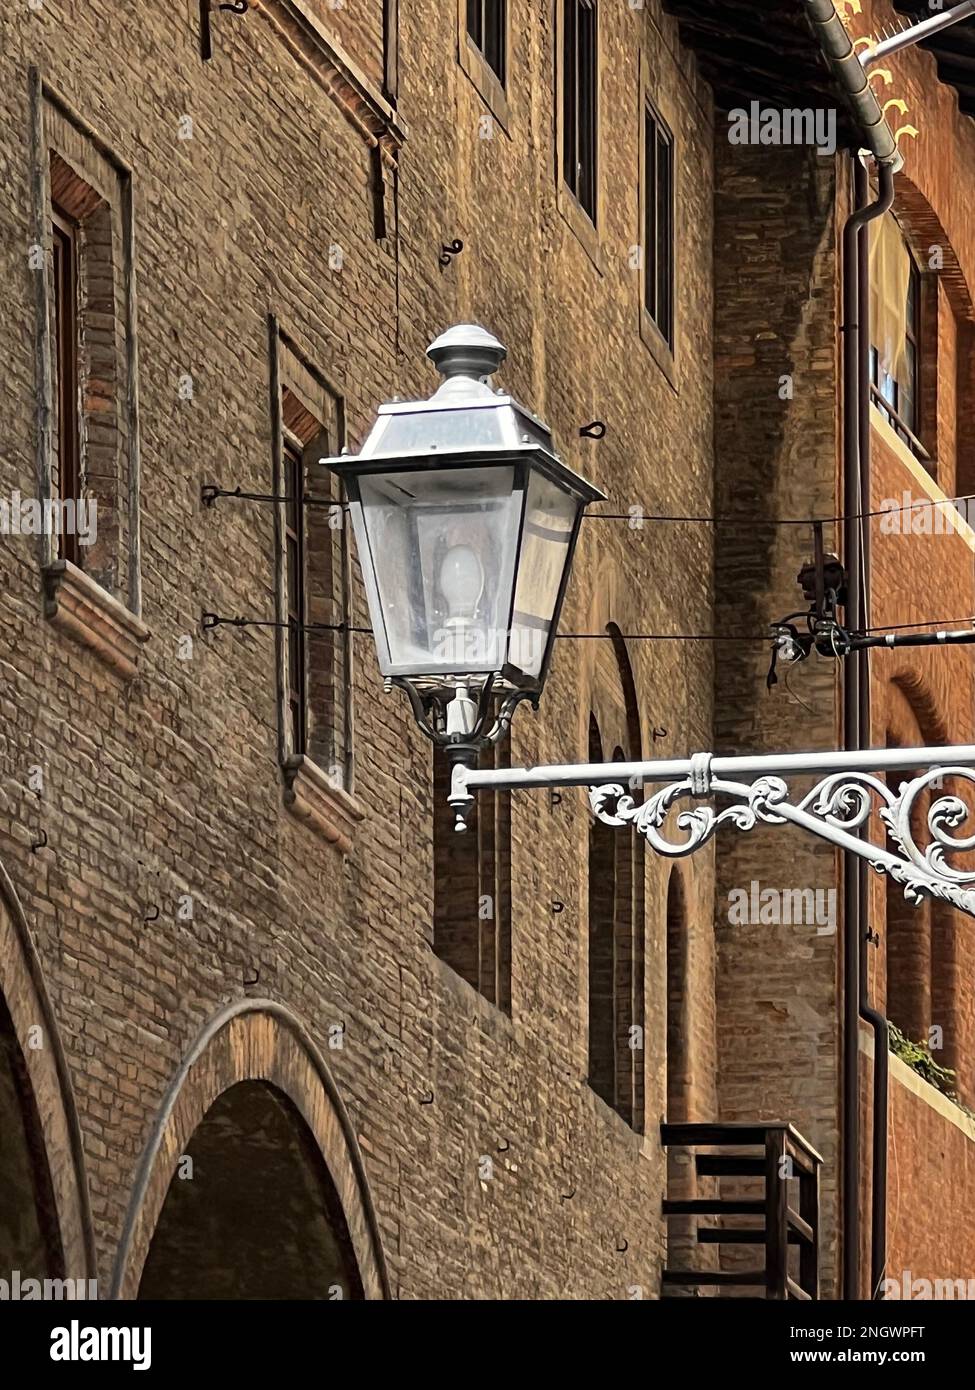 A Bologna, Italia, si trova una lampada decorativa per la strada Foto Stock